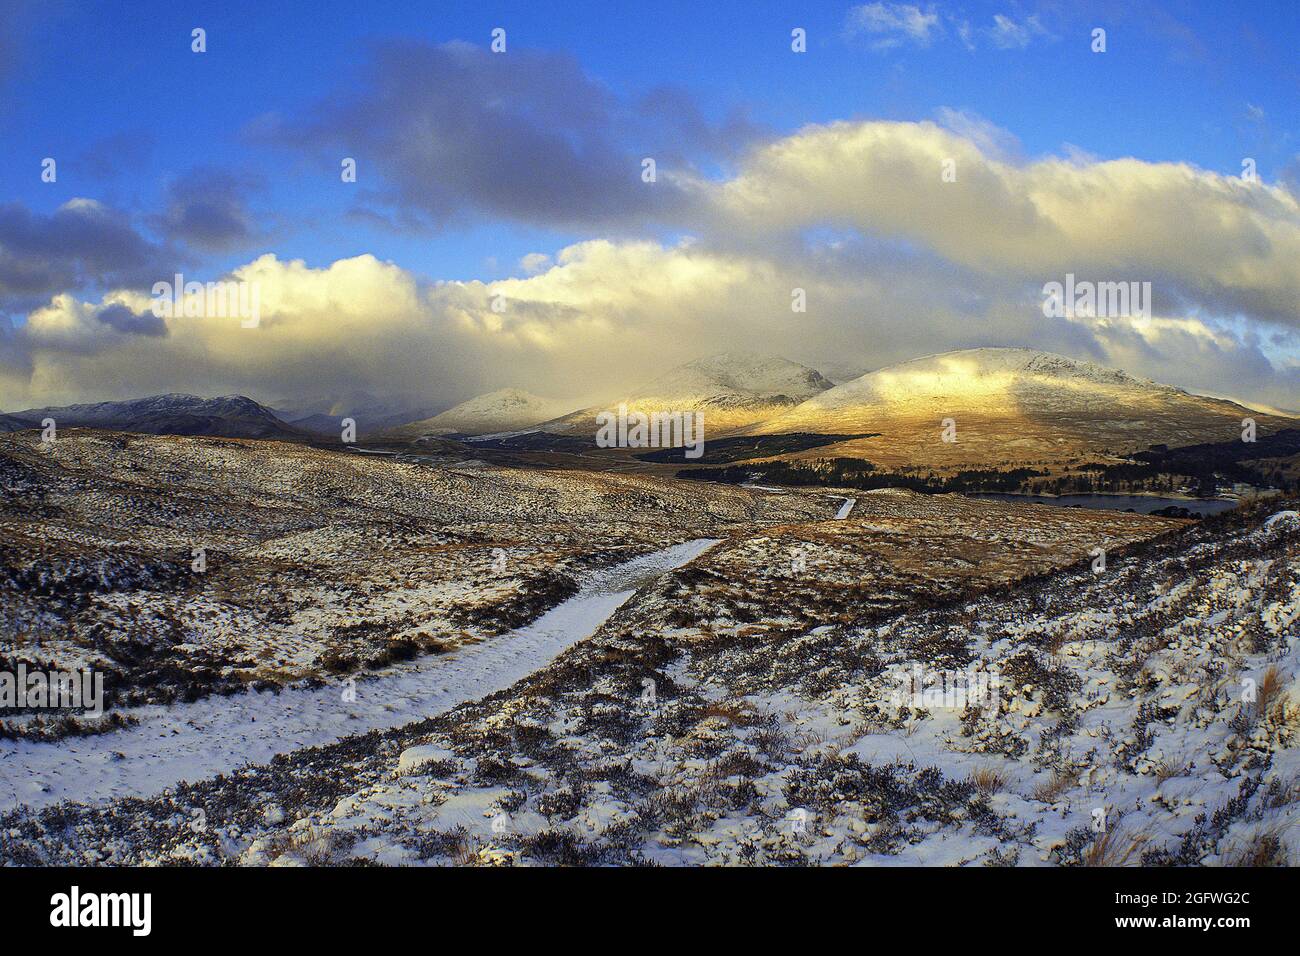 La pista di montagna conduce attraverso la brughiera parzialmente innevata verso le colline nuvolose di Blackmount, Rannoch Moor, Regno Unito, Scozia, Highland Foto Stock